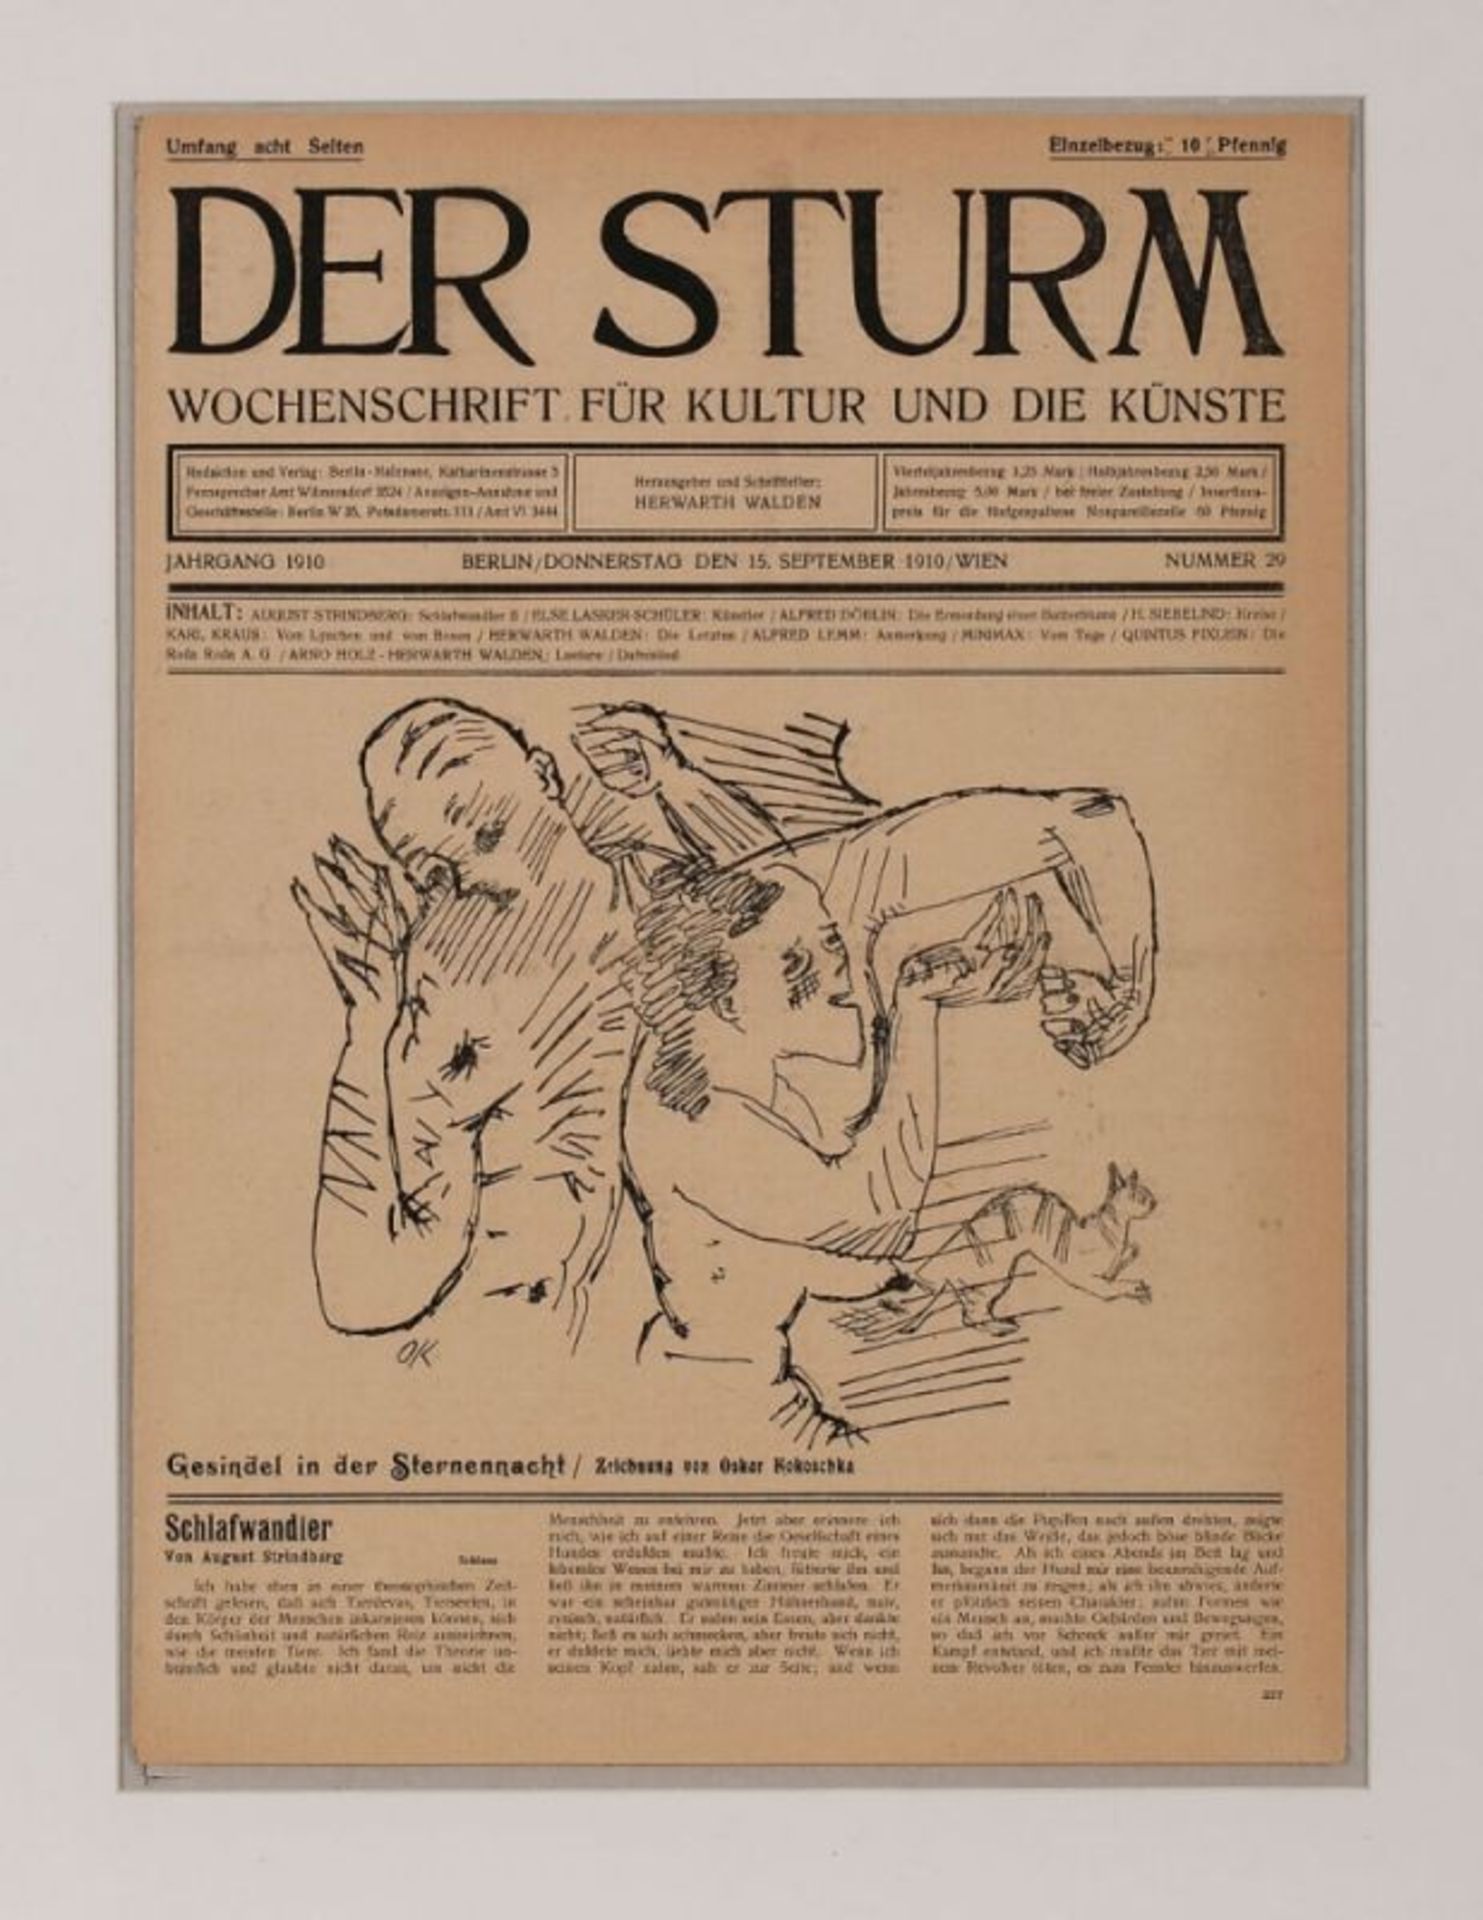 Titelblatt"Der Sturm - Wochenschrift für Kutur und die Künste" 1910 mit einer Titelillustration